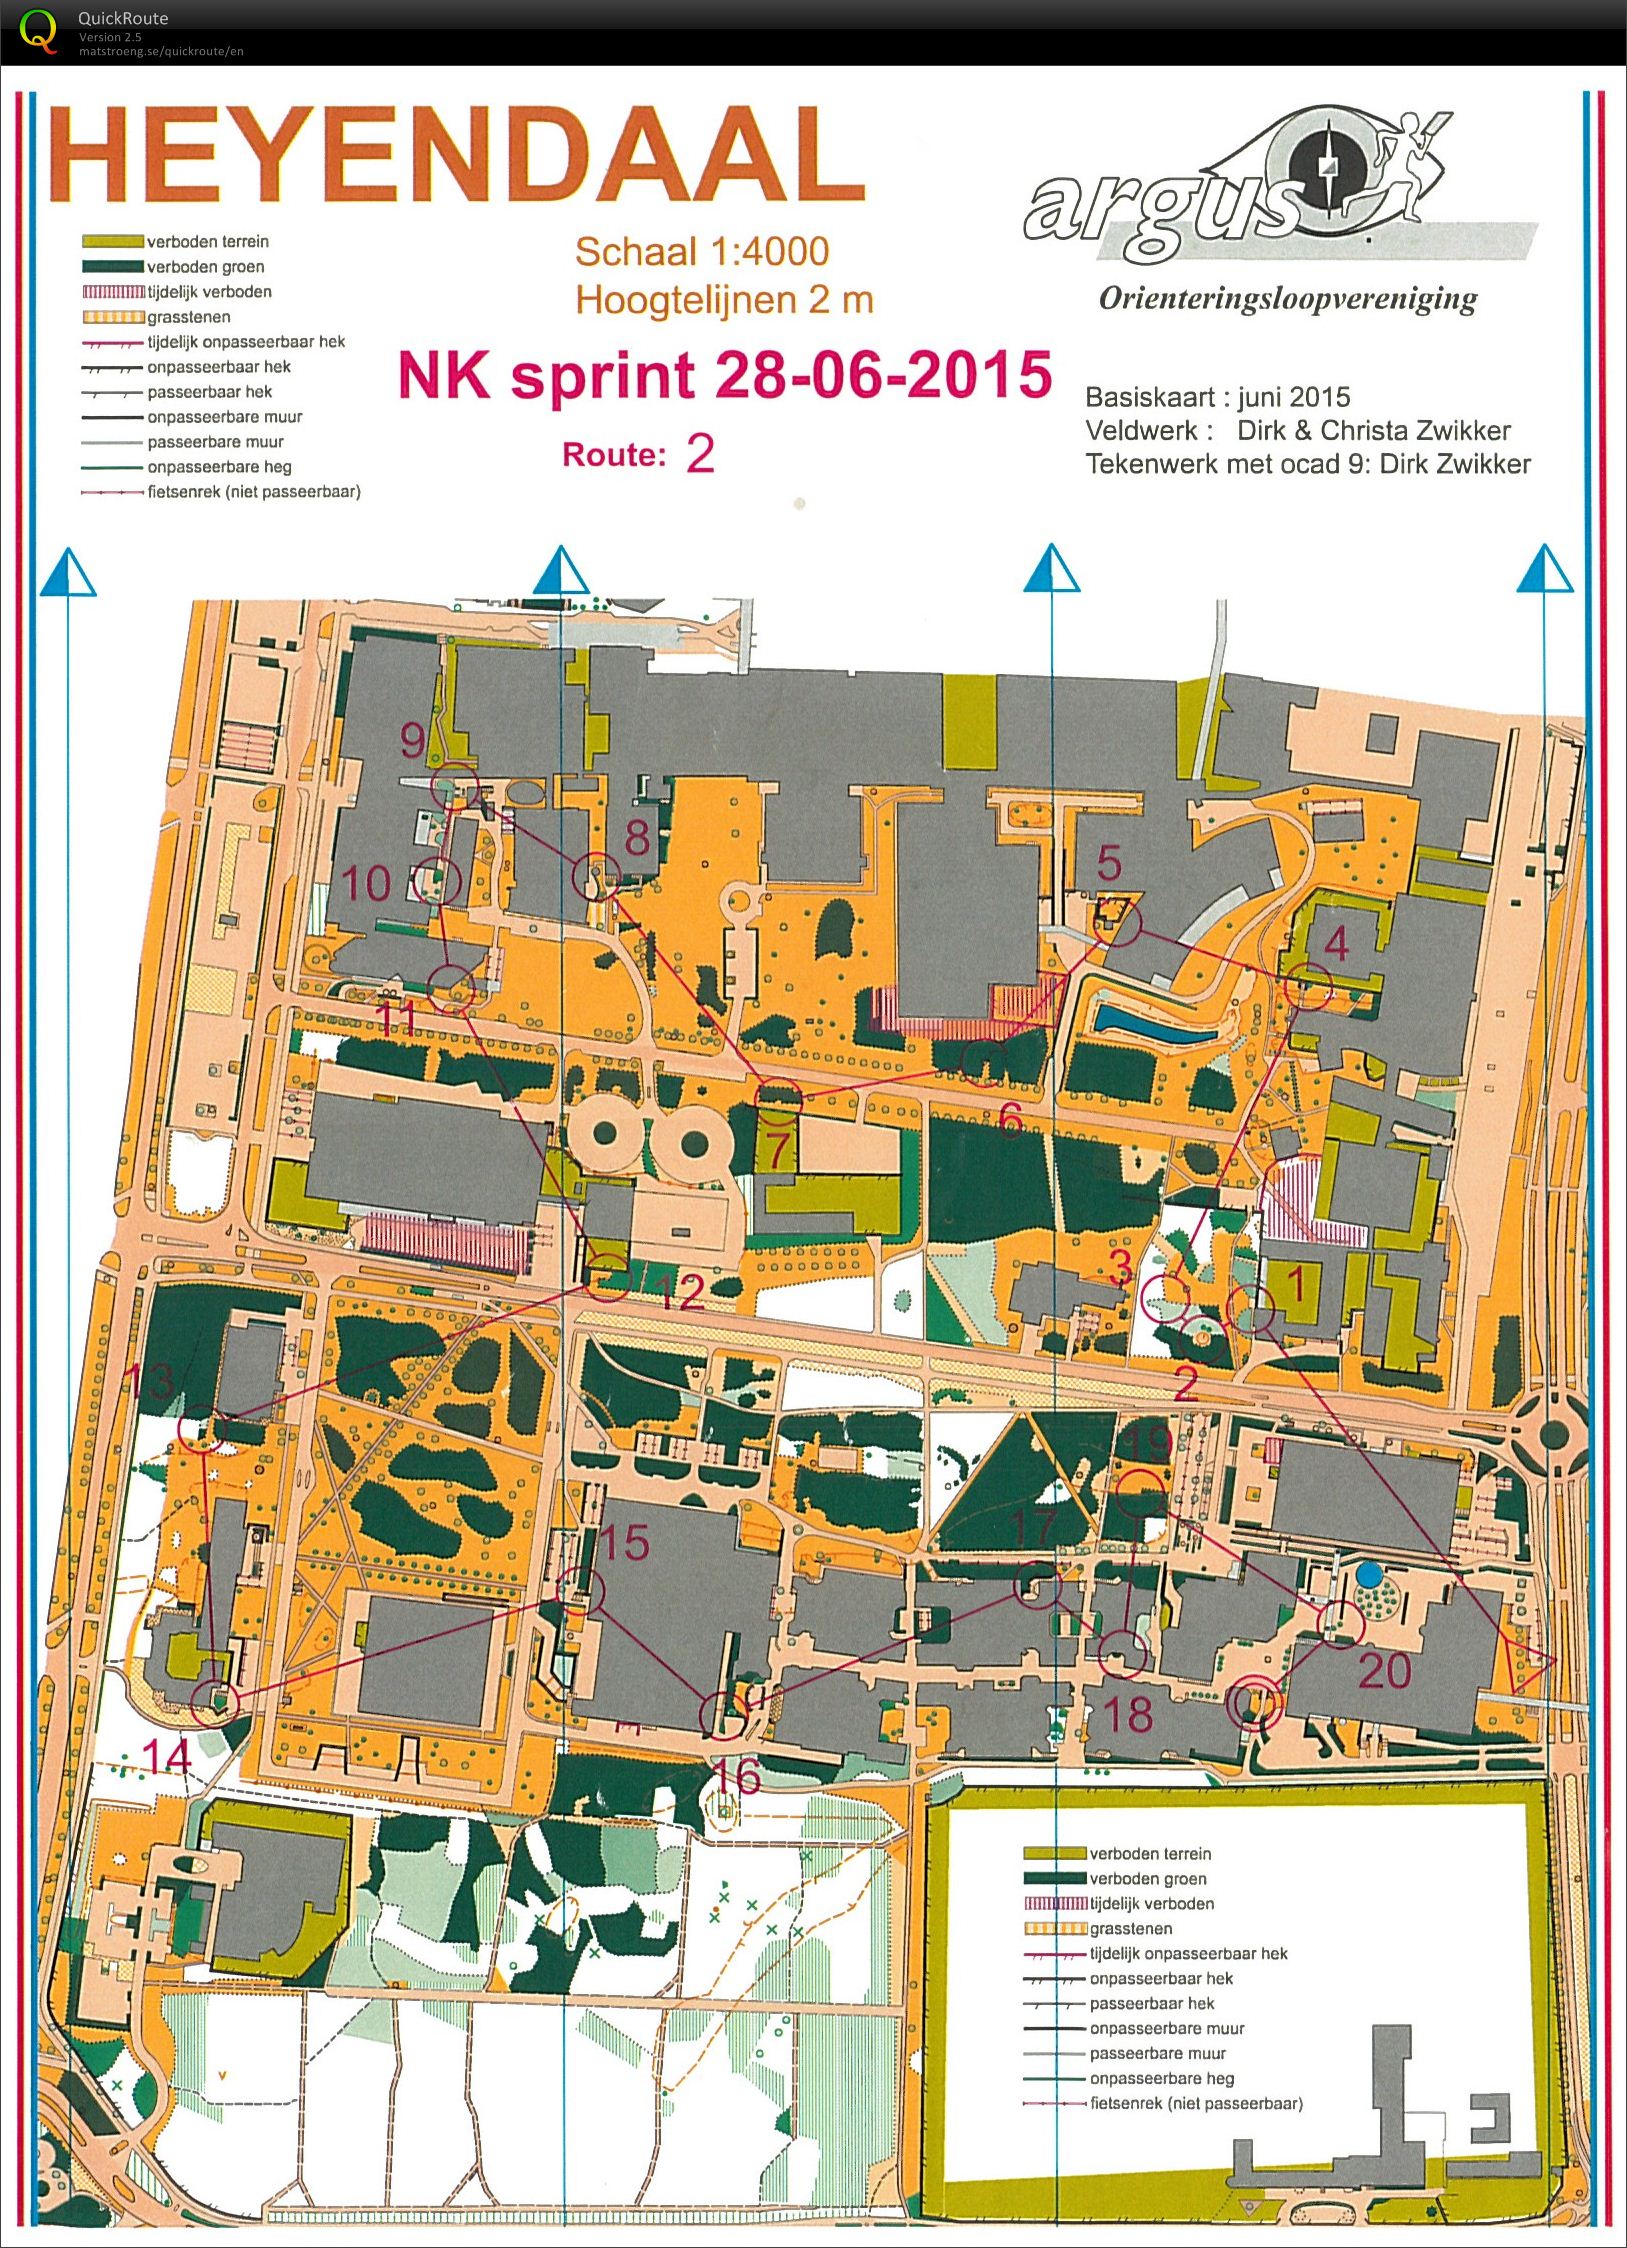 NK Sprint Heyendaal (2015-06-28)